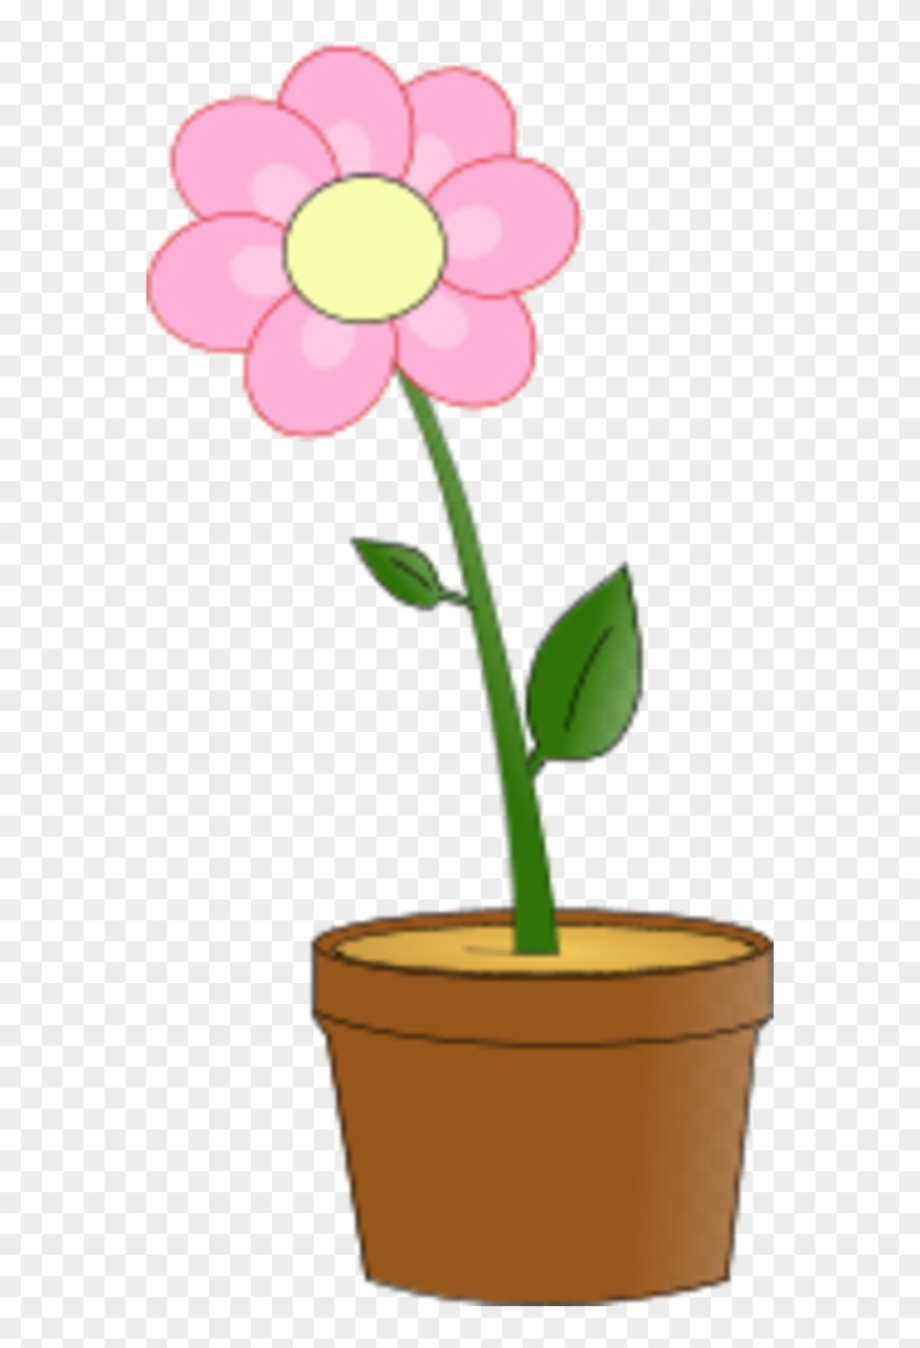 Flower pot clipart plant.